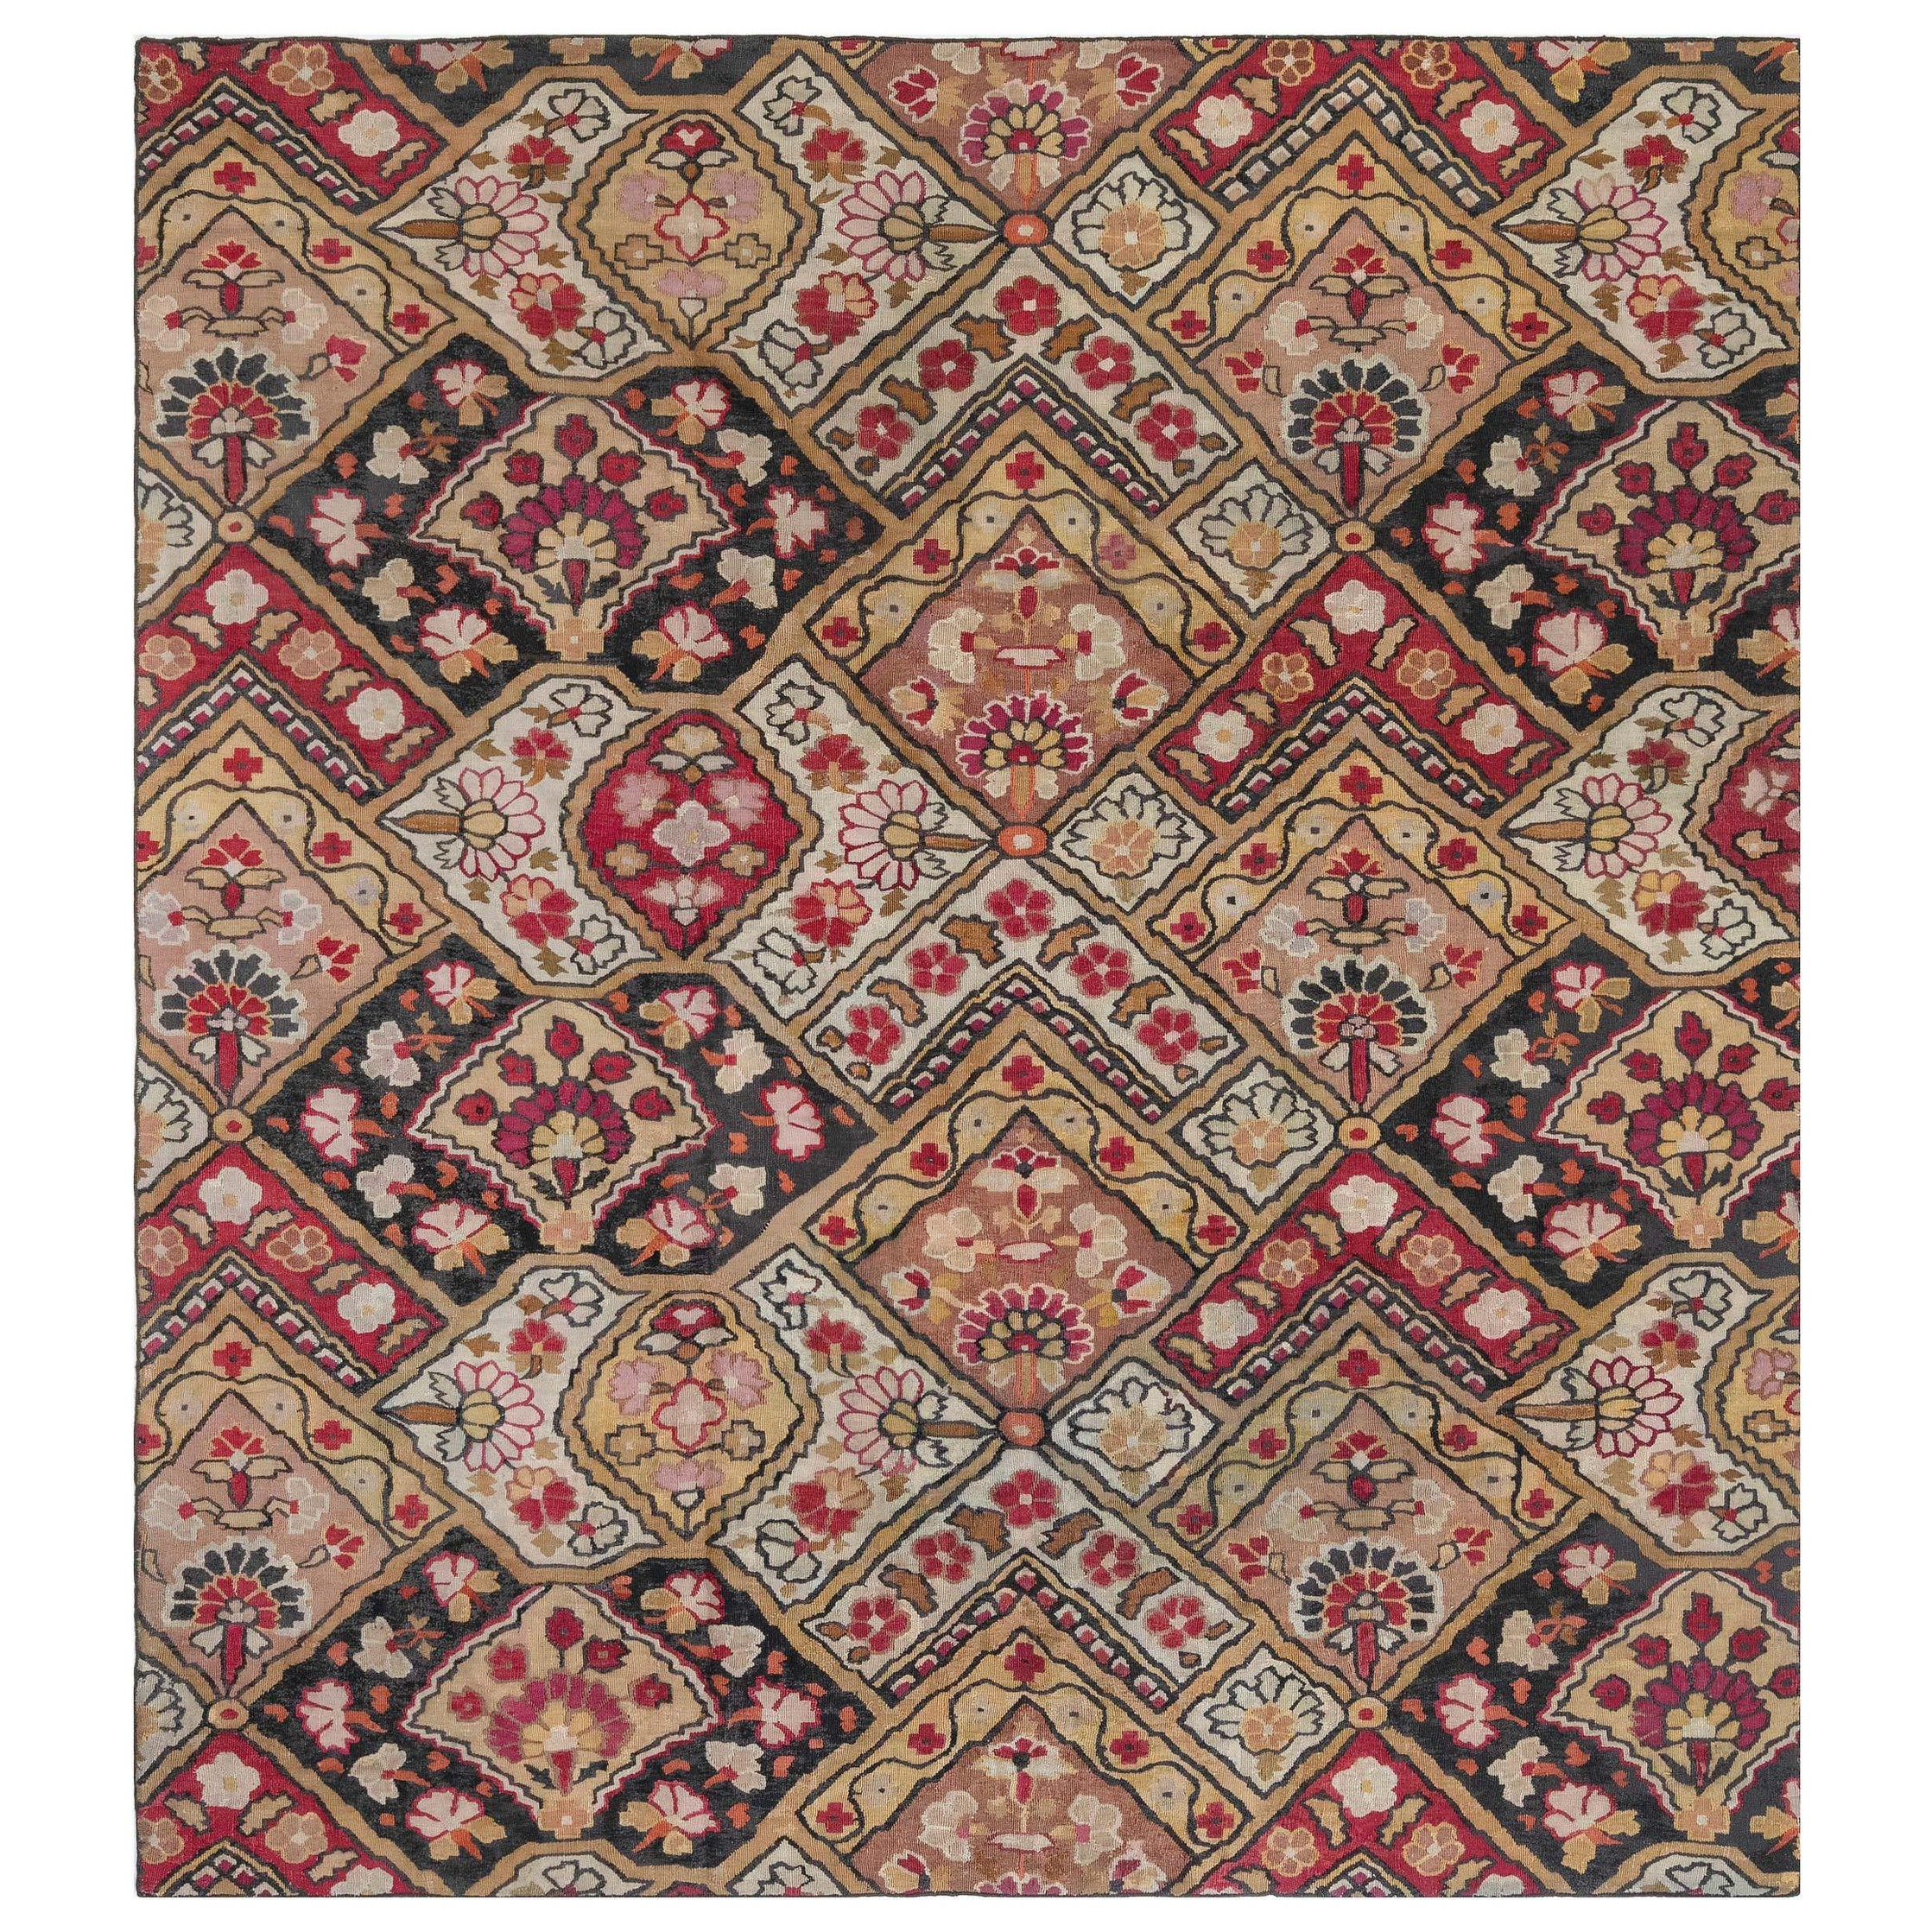 Authentischer handgefertigter französischer Aubusson-Teppich aus dem 19.